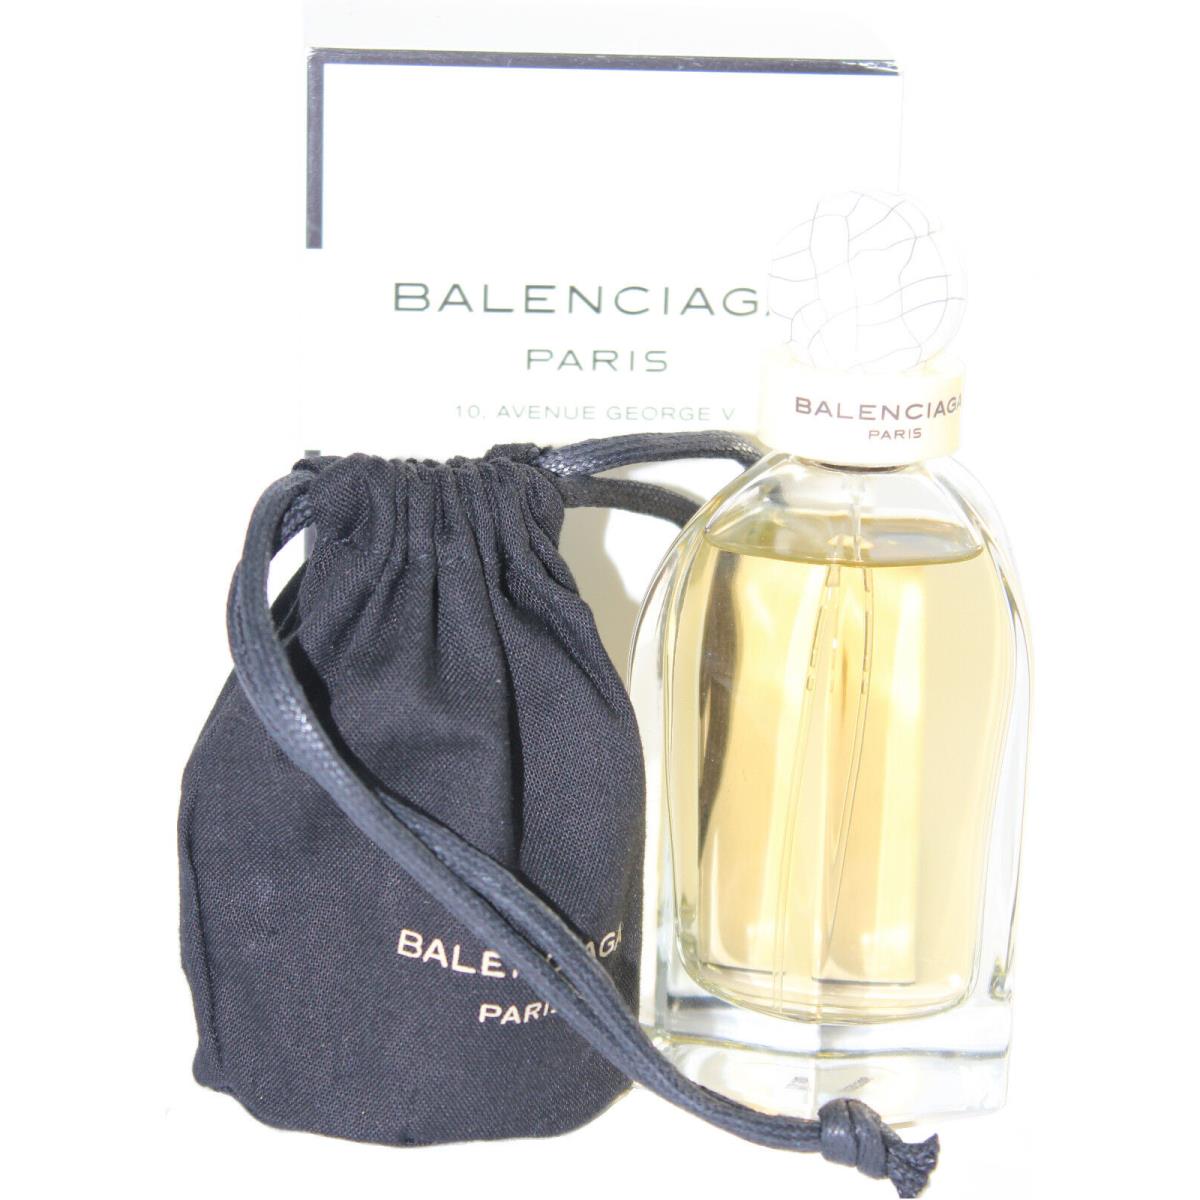 Balenciaga Paris by Balenciaga 2.5 oz Eau De Parfum Spray For Women